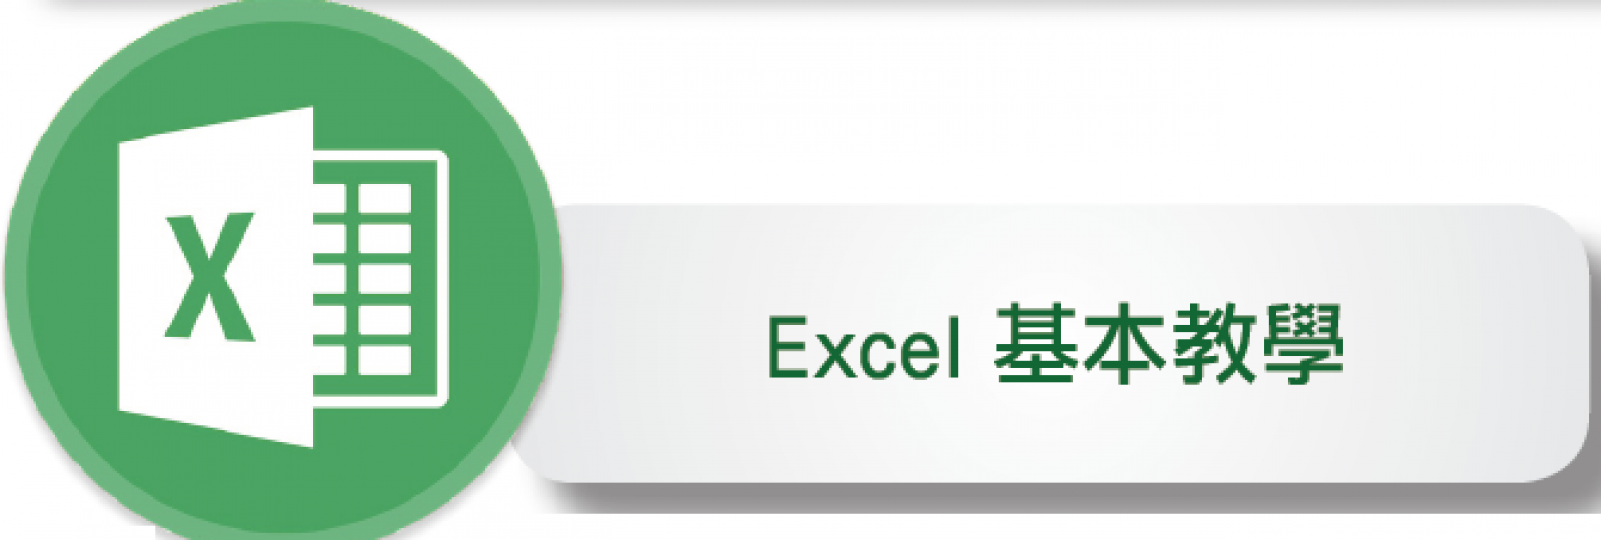 【長青數碼教室】Excel 基本教學